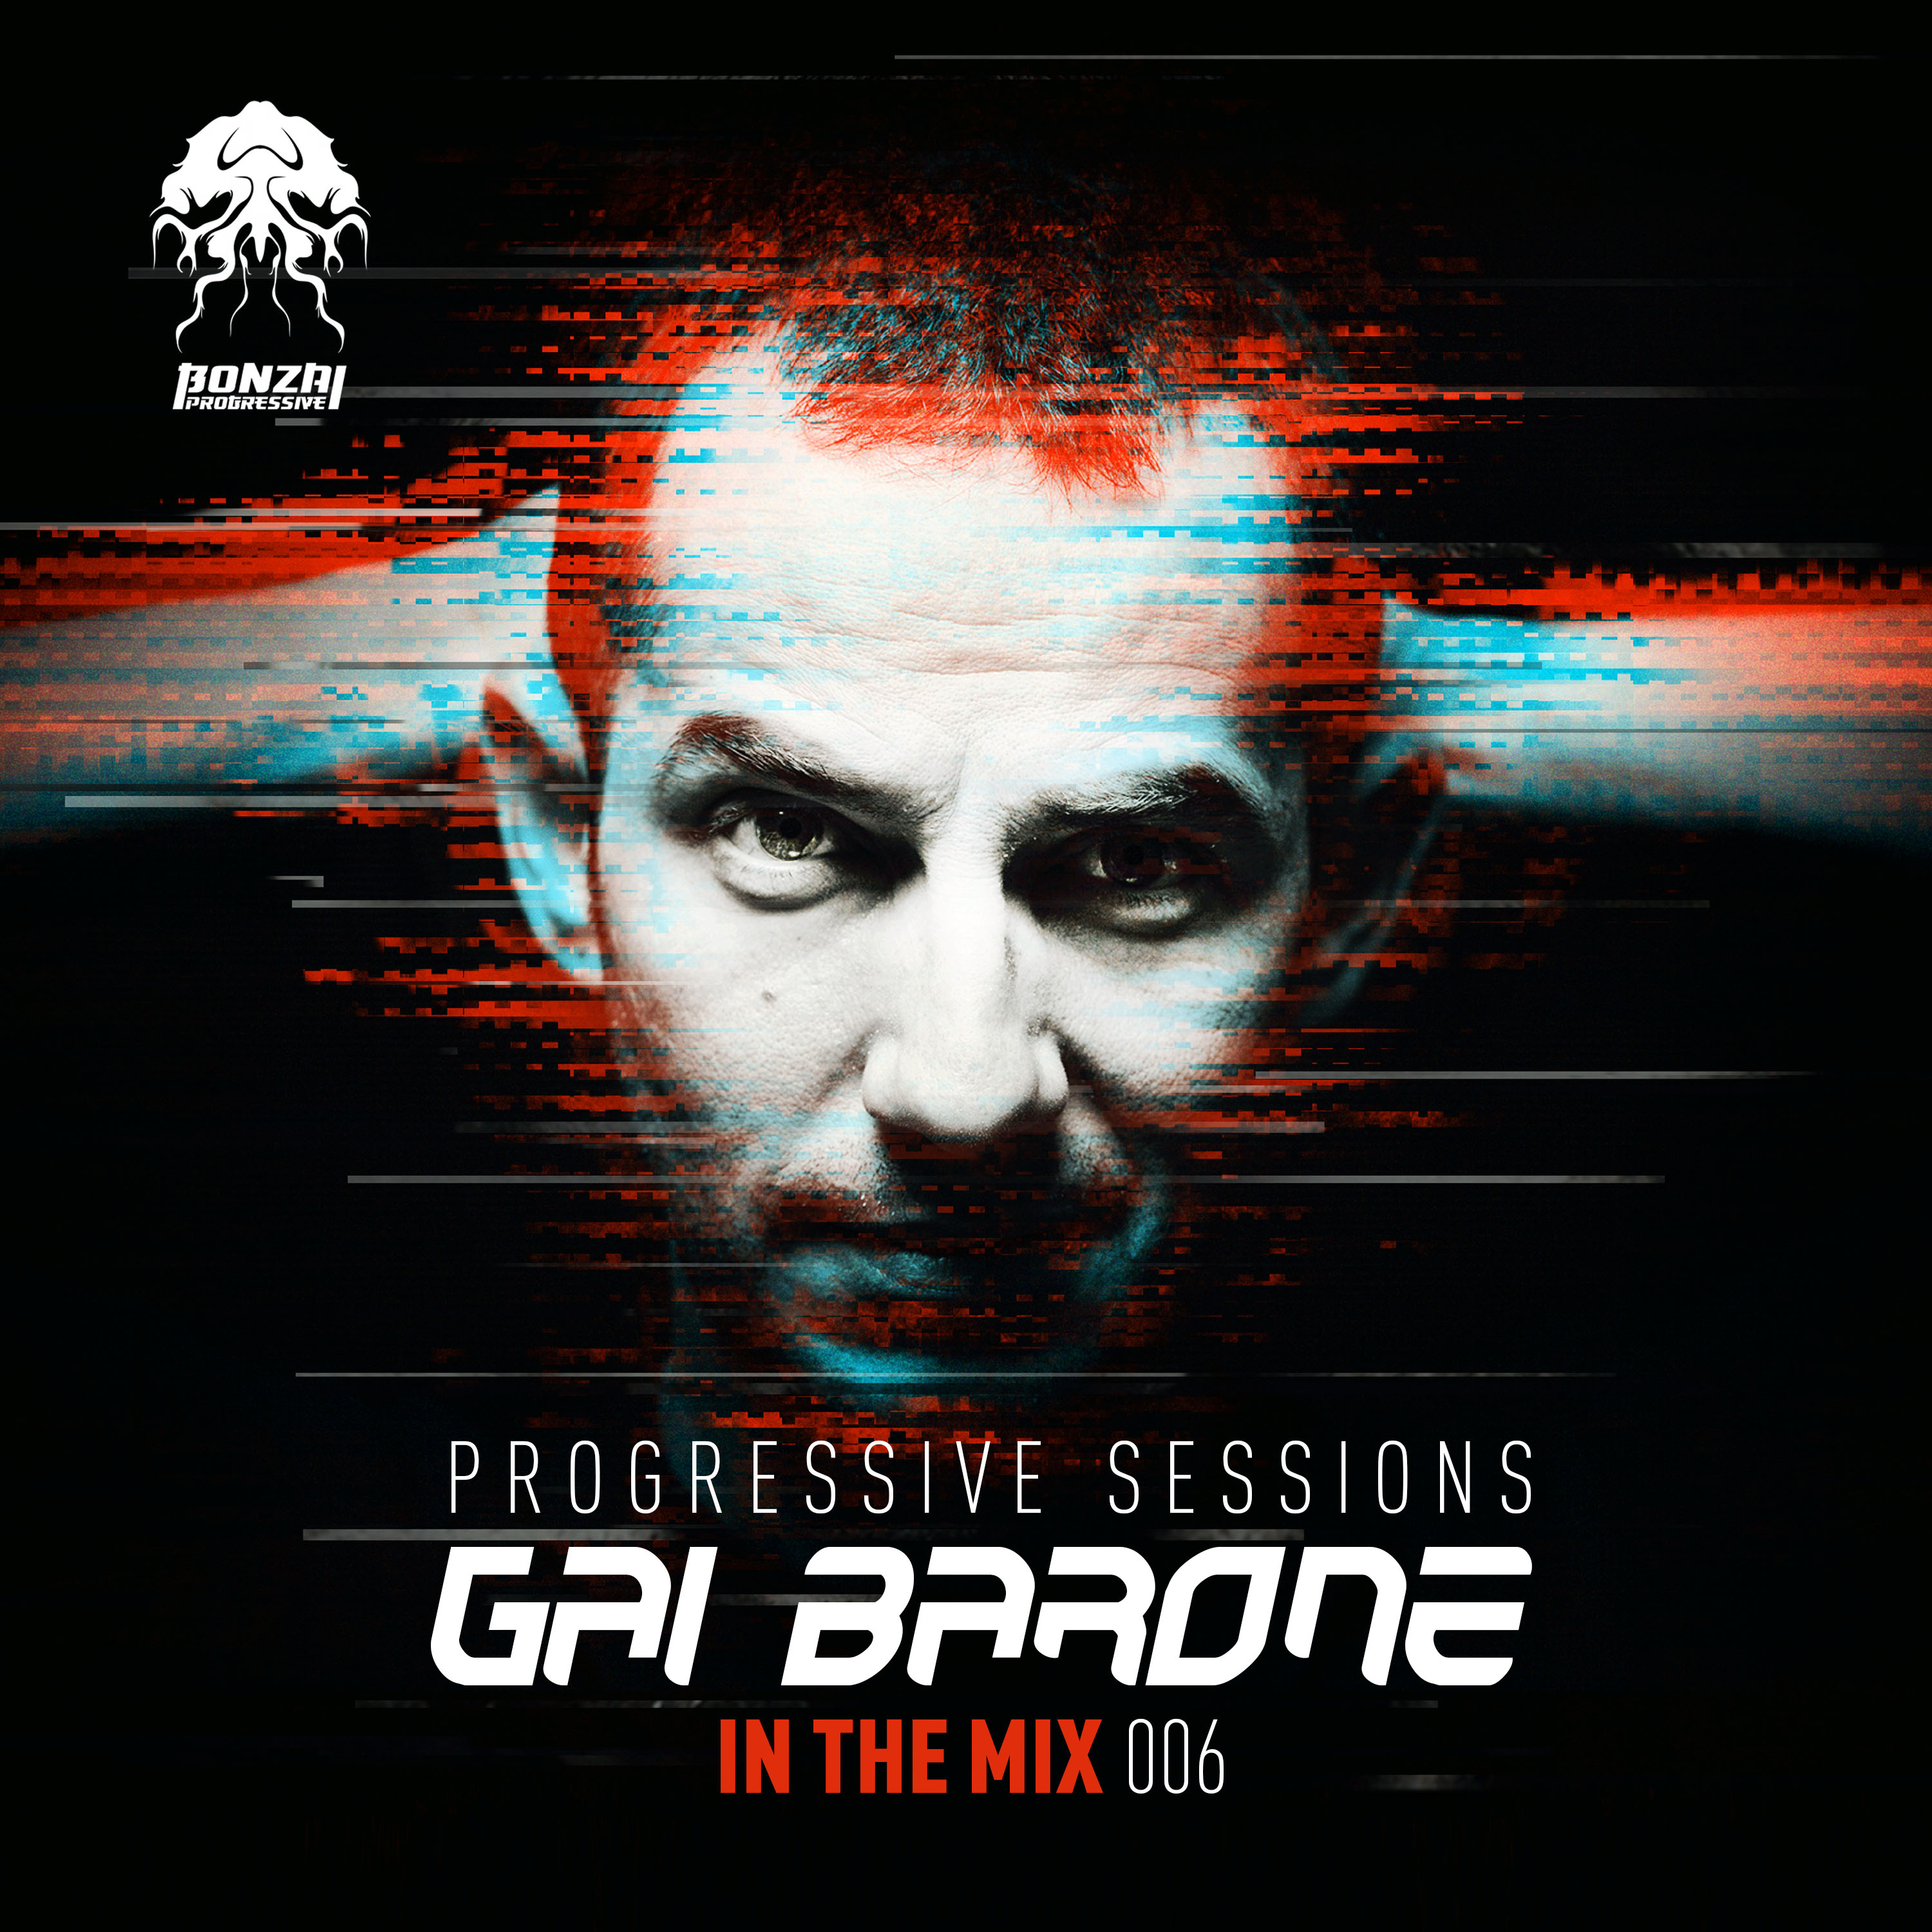 Gai Barone "In The Mix 006" Progressive Sessions